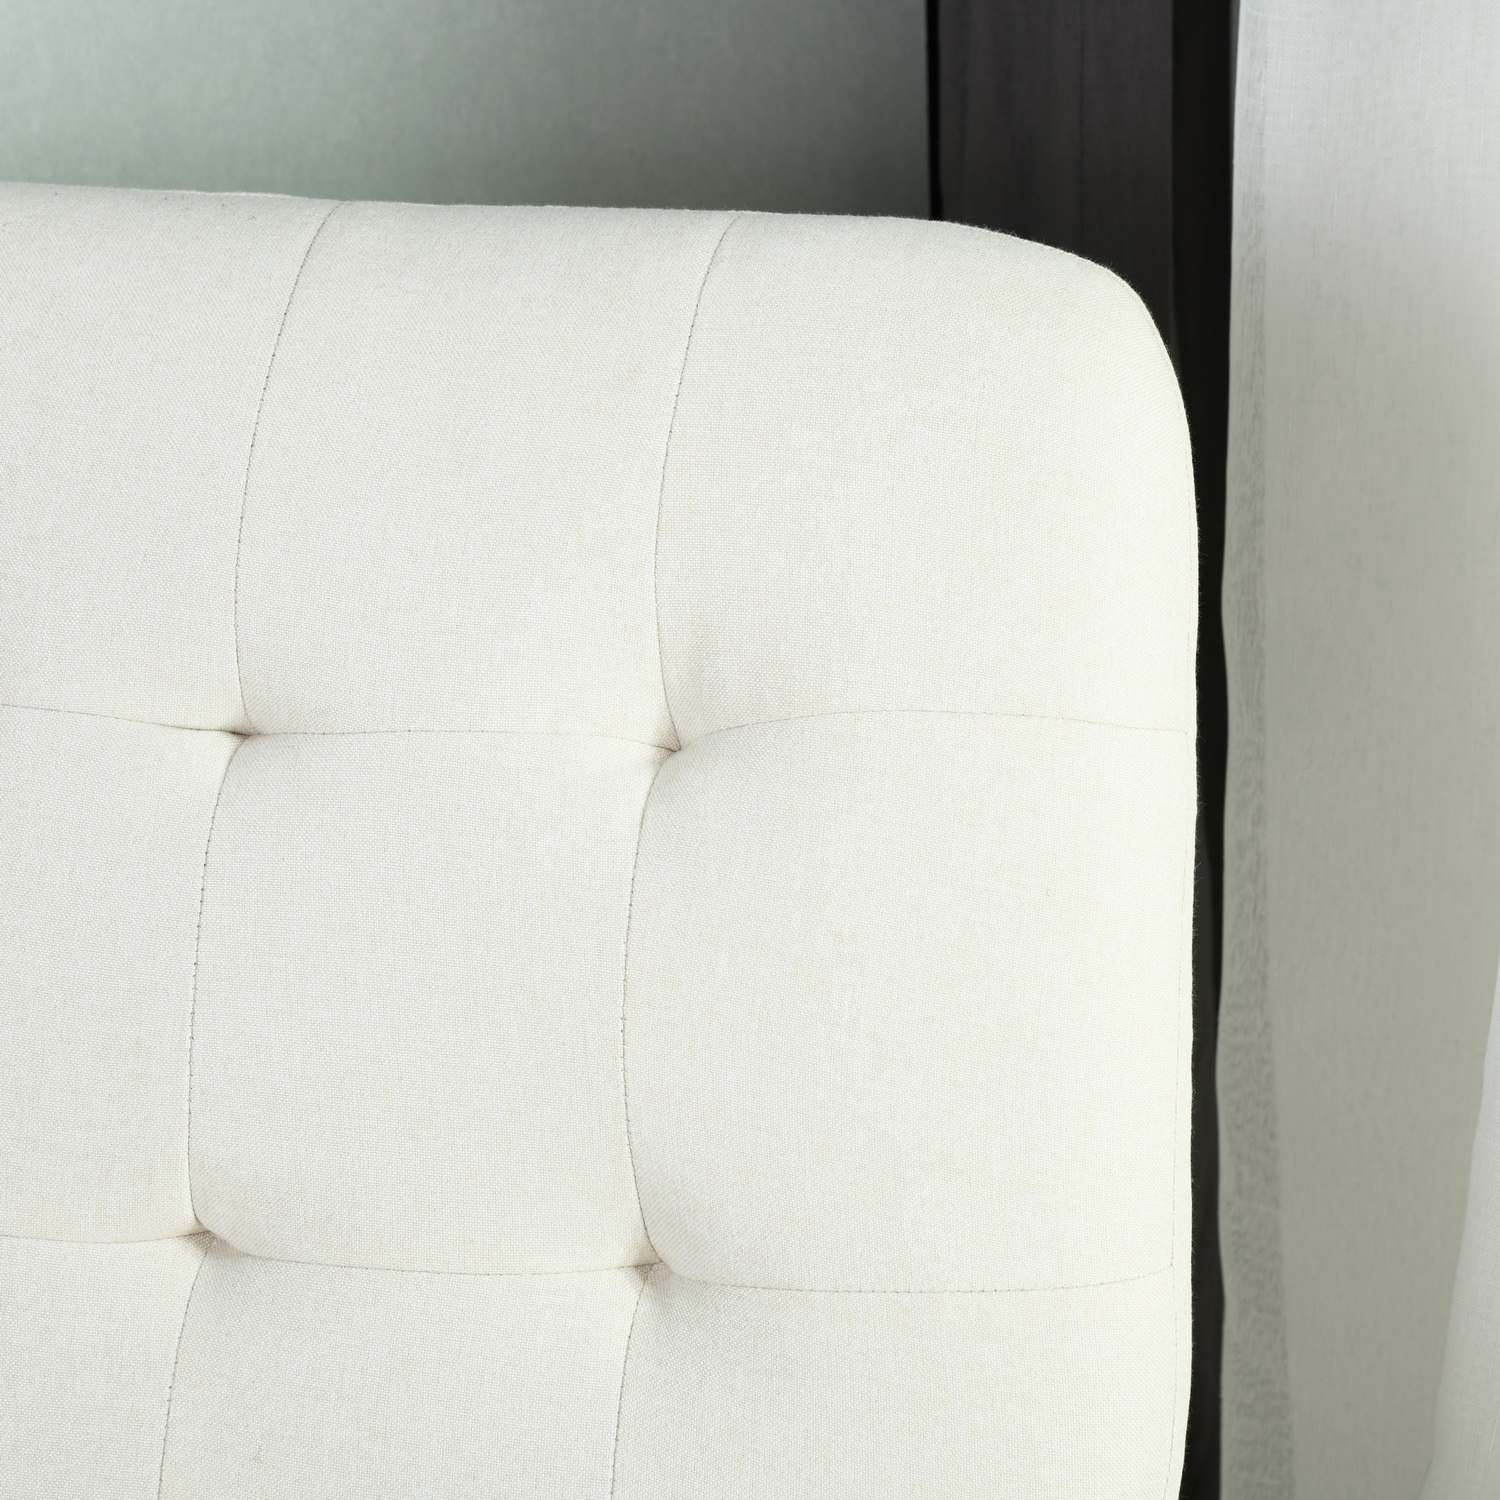 כורסא מעוצבת דגם NICOLAS צבע קרם HOMAX